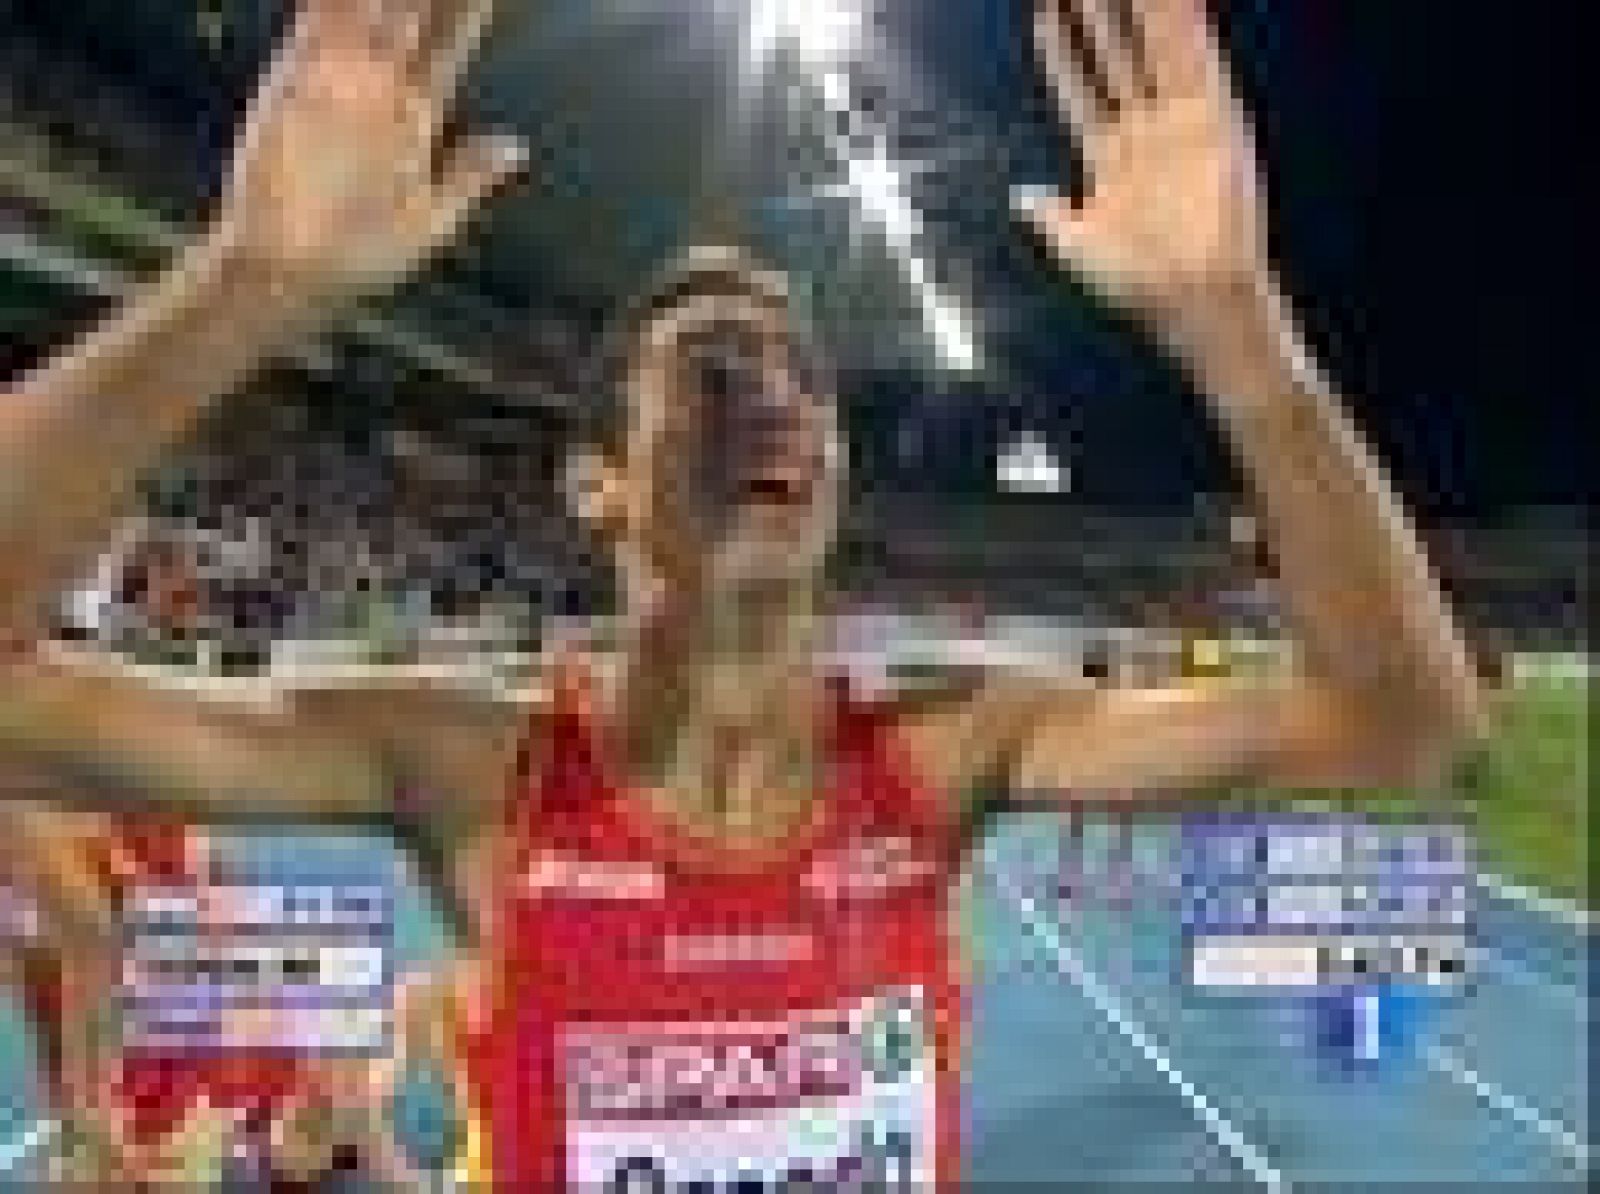 España abrió el medallero en el Europeo de Atletismo que se celebra en Barcelona gracias a la plata de Marta Domíguez en los 3.000m obstáculos. Luego se unieron a la fiesta Casado con un oro y olmedo con el bronce, ambos en 1.500metros.